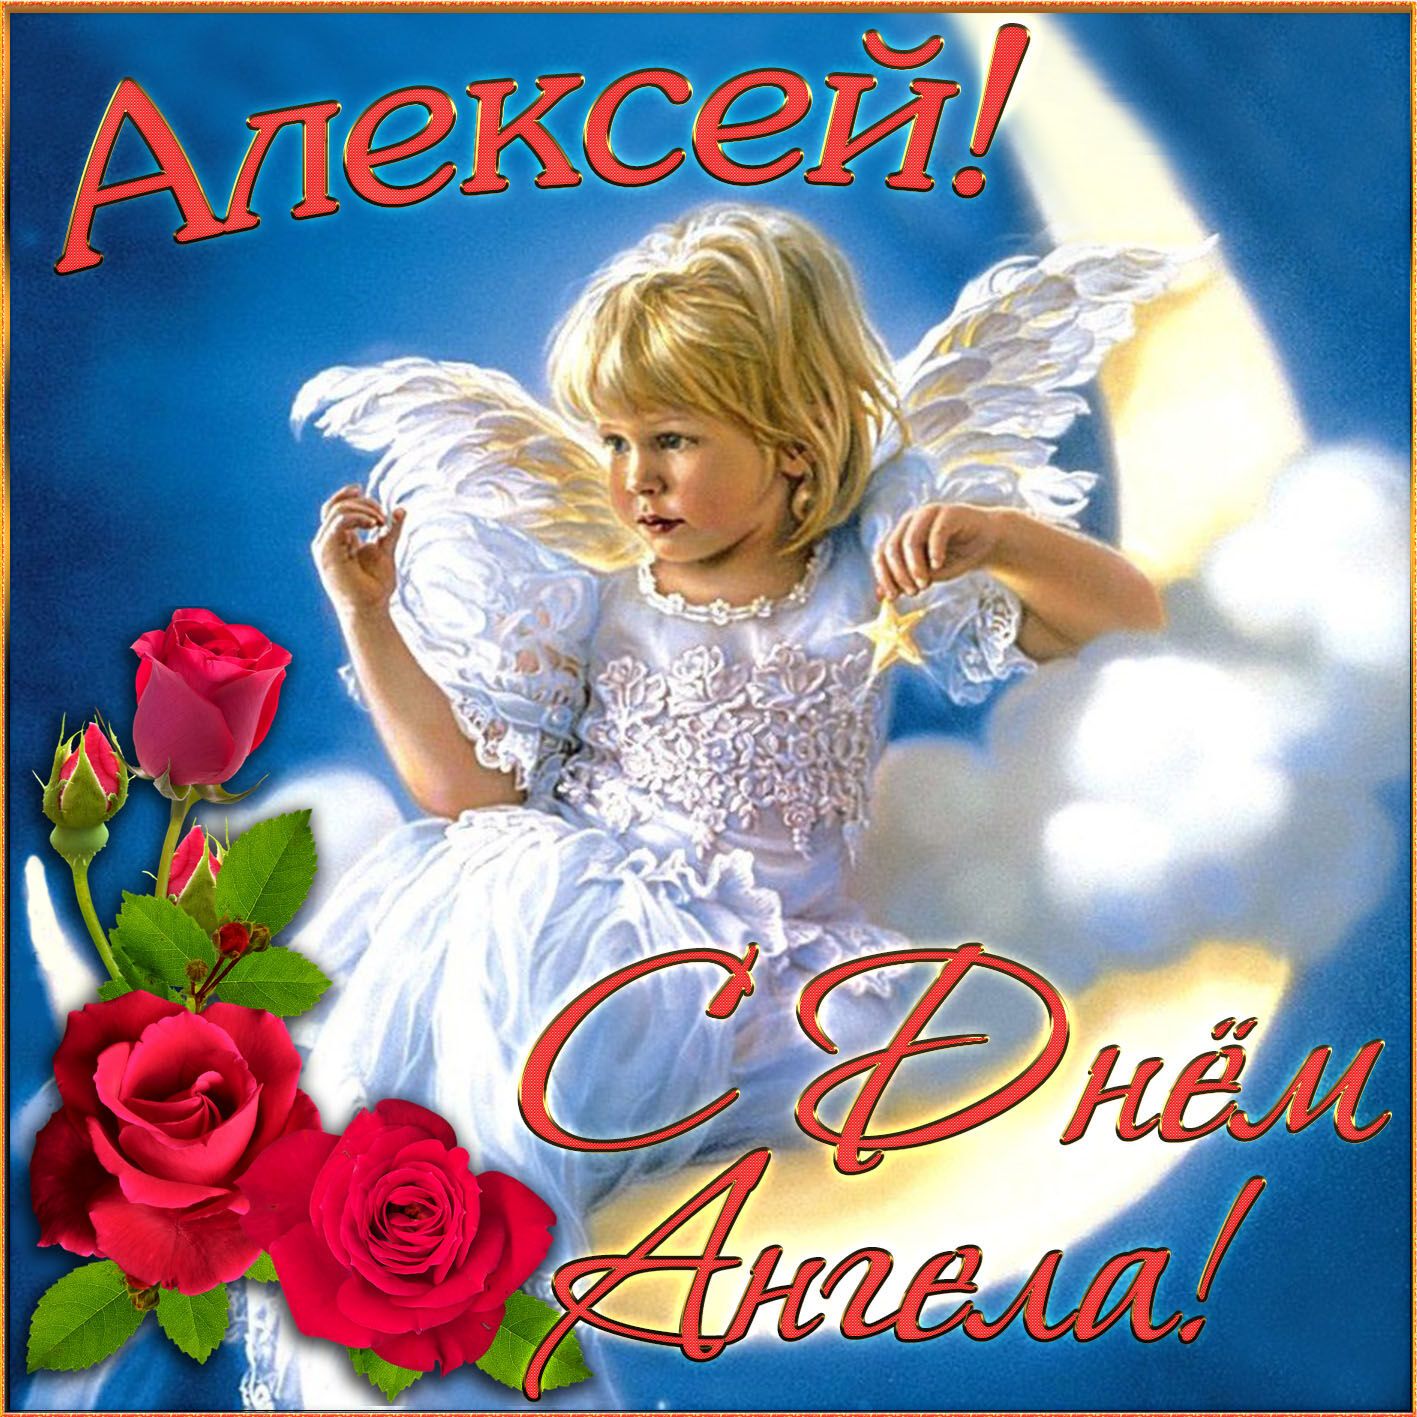 День ангела Алексея: лучшие картинки и открытки для поздравления на именины